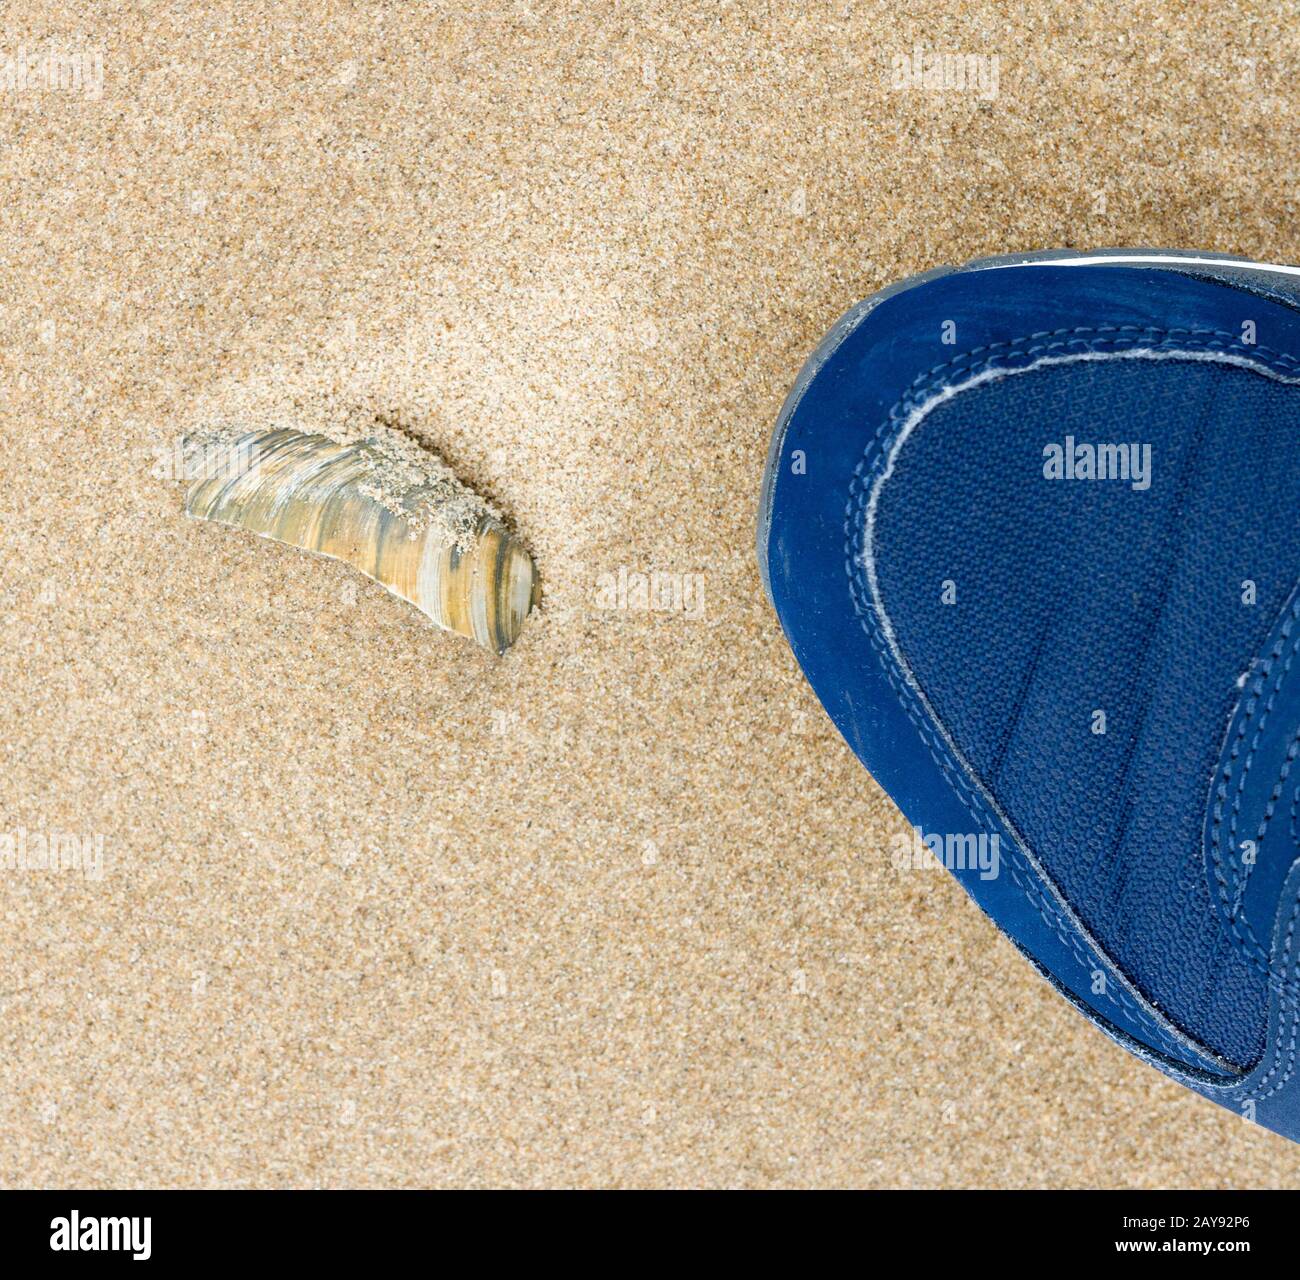 Chaussure de sport et coque de mer sur le sable à Blackpool, Royaume-Uni Banque D'Images